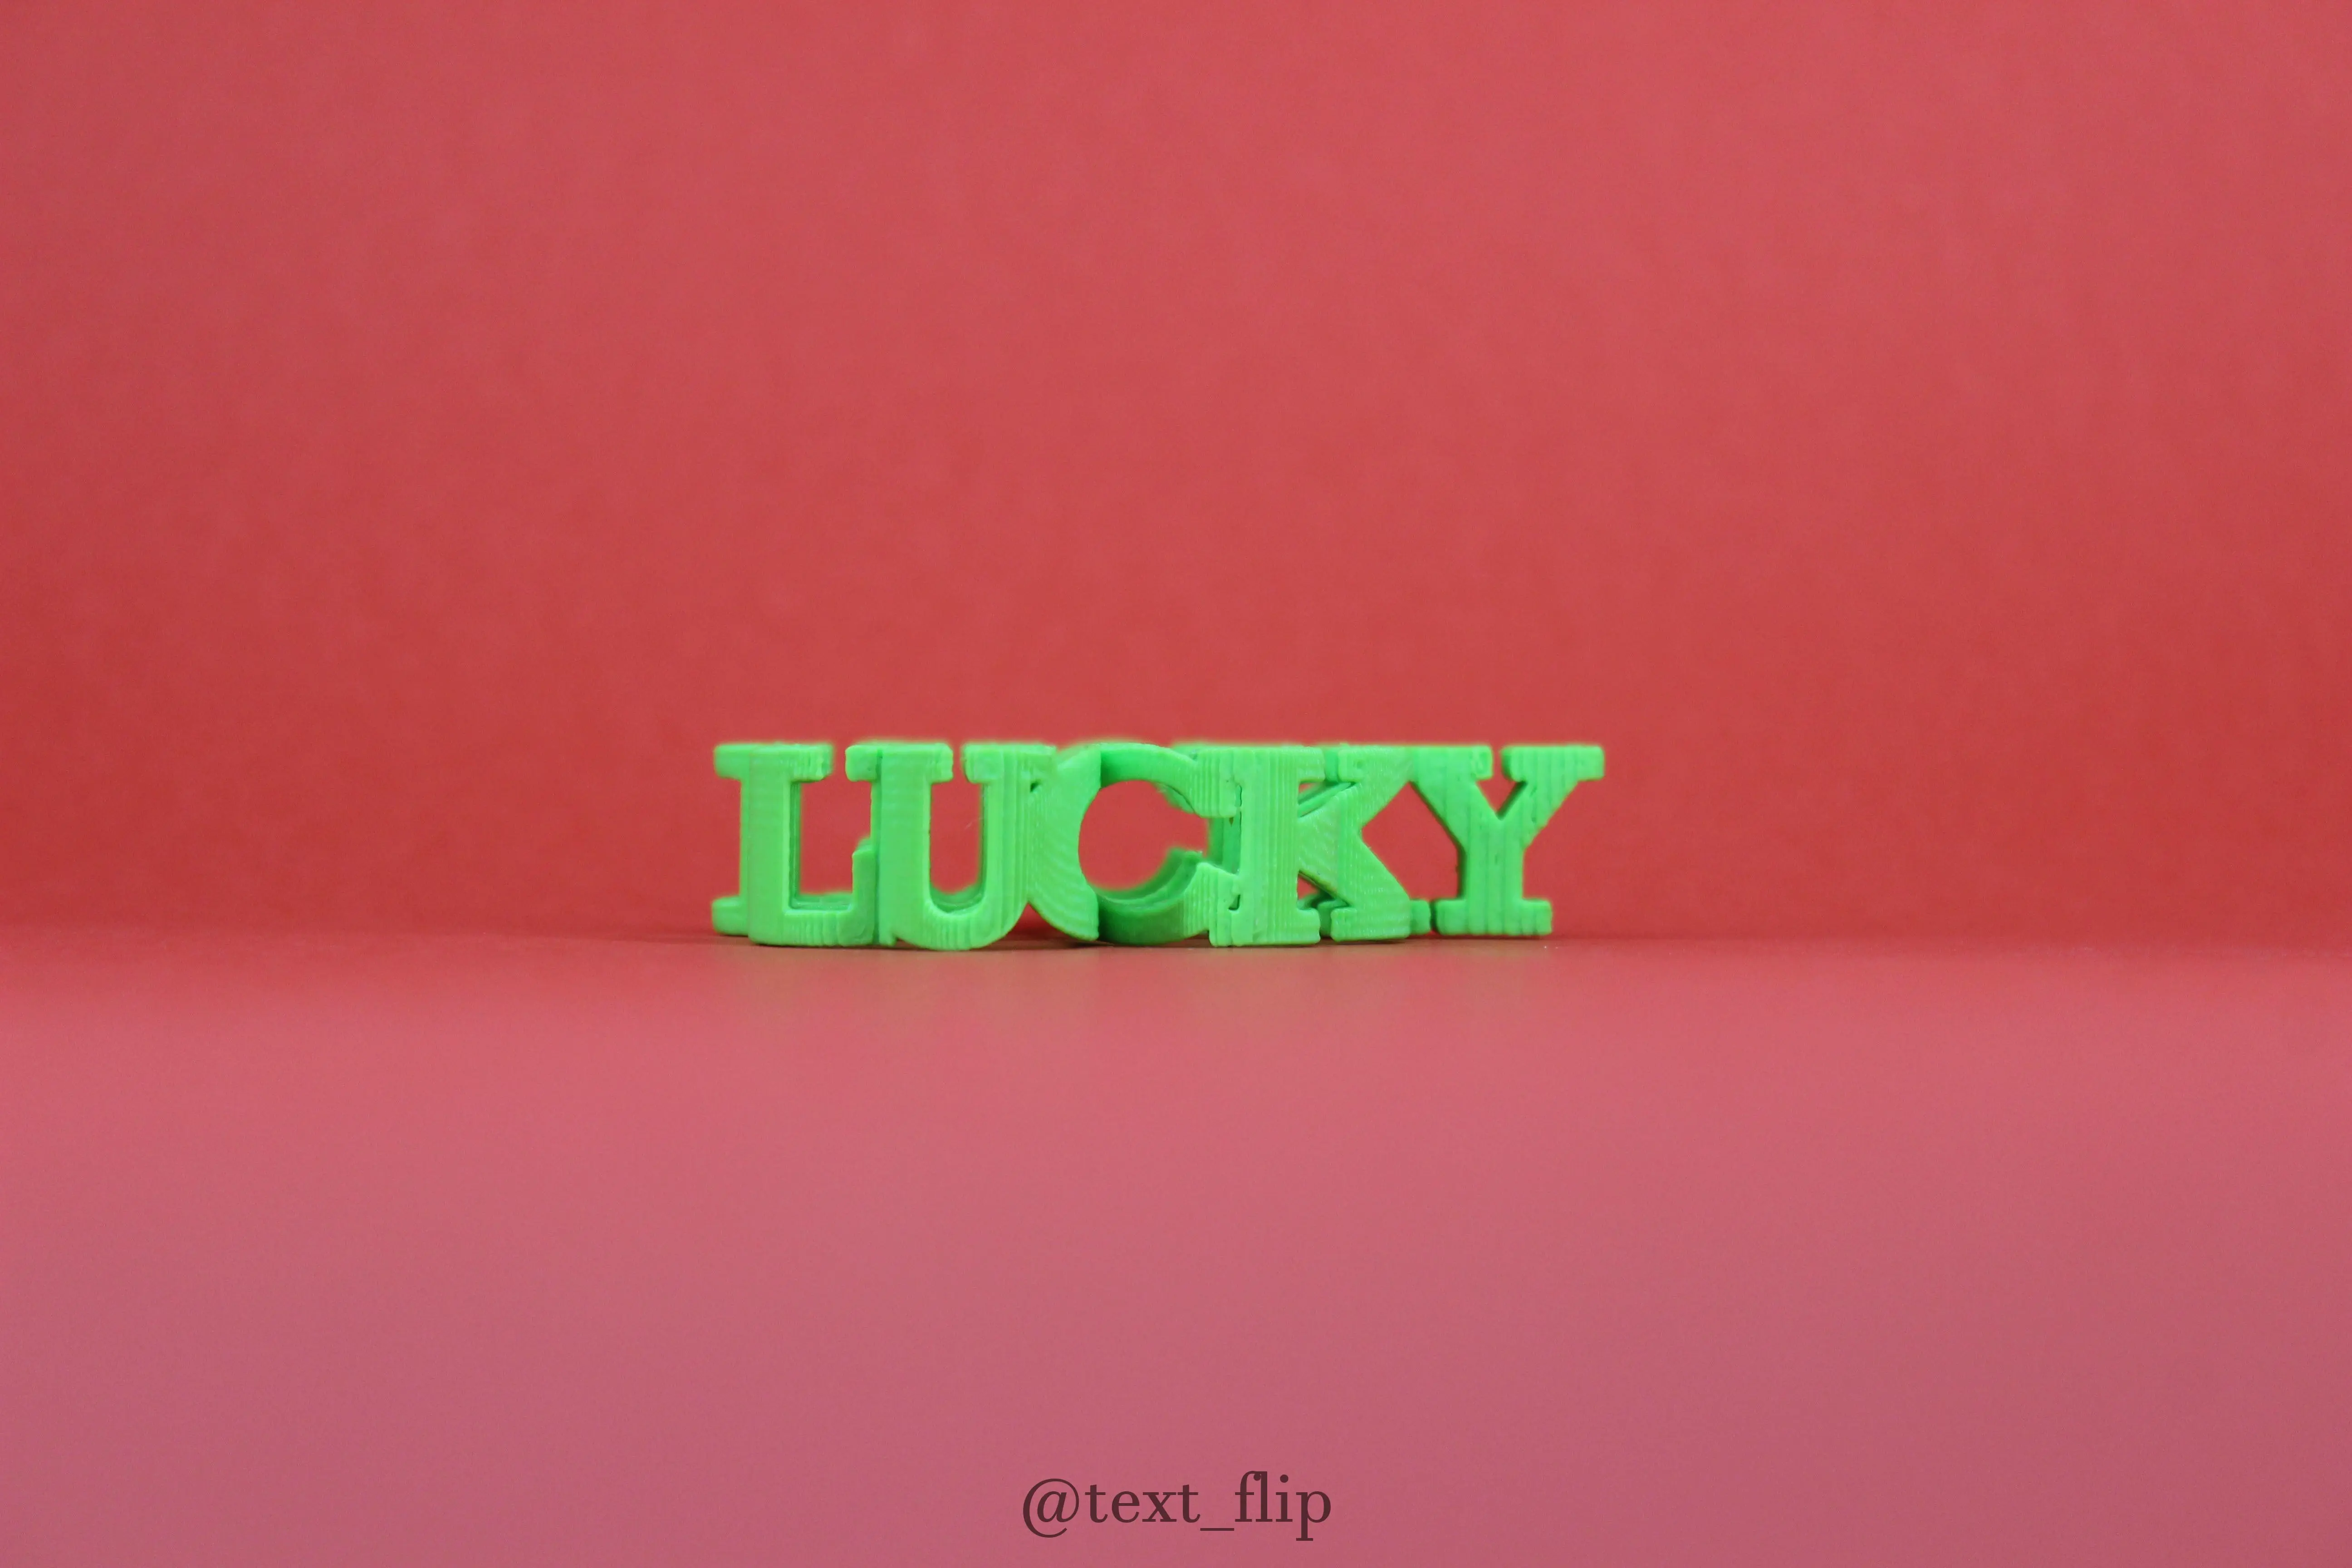 Text Flip - Lucky